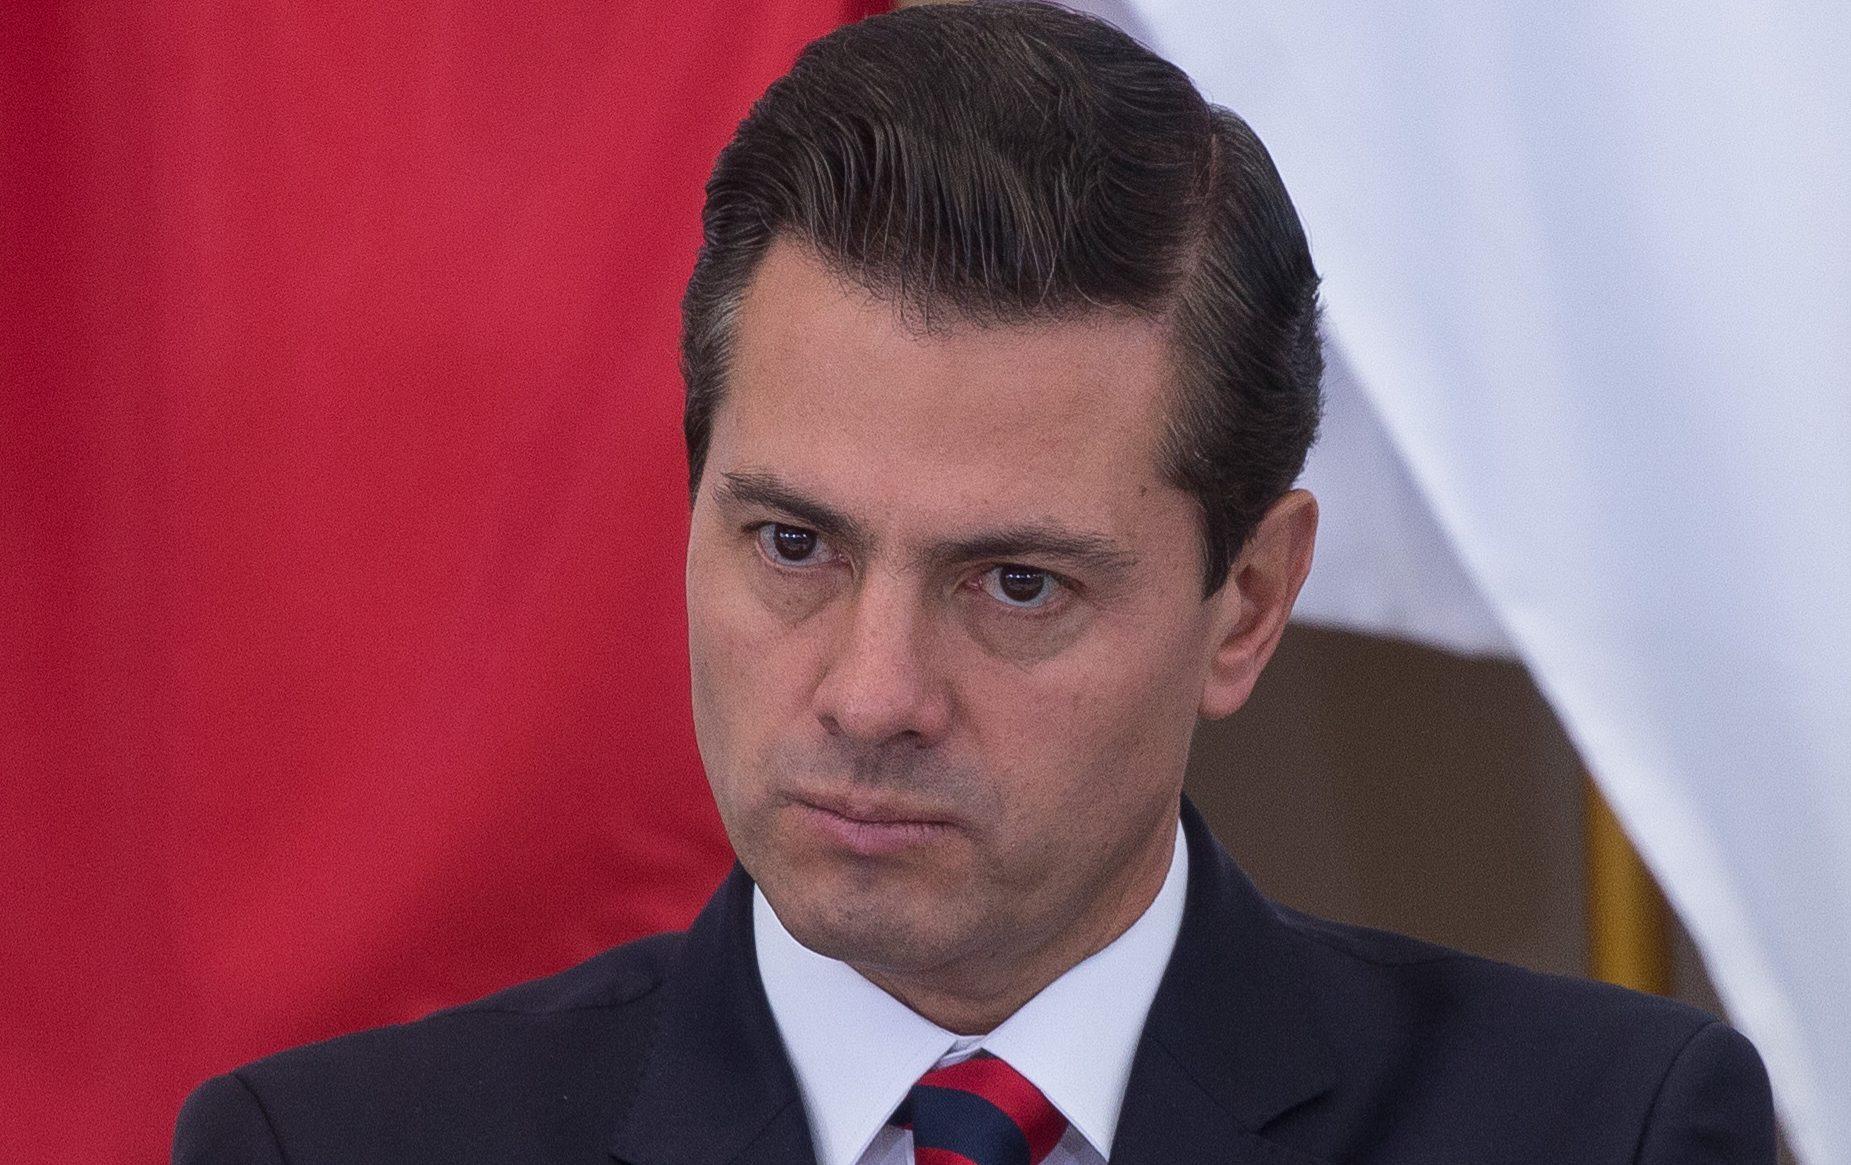 Perdonar a criminales sería traicionar a México, dice Peña sobre propuesta de amnistía de AMLO